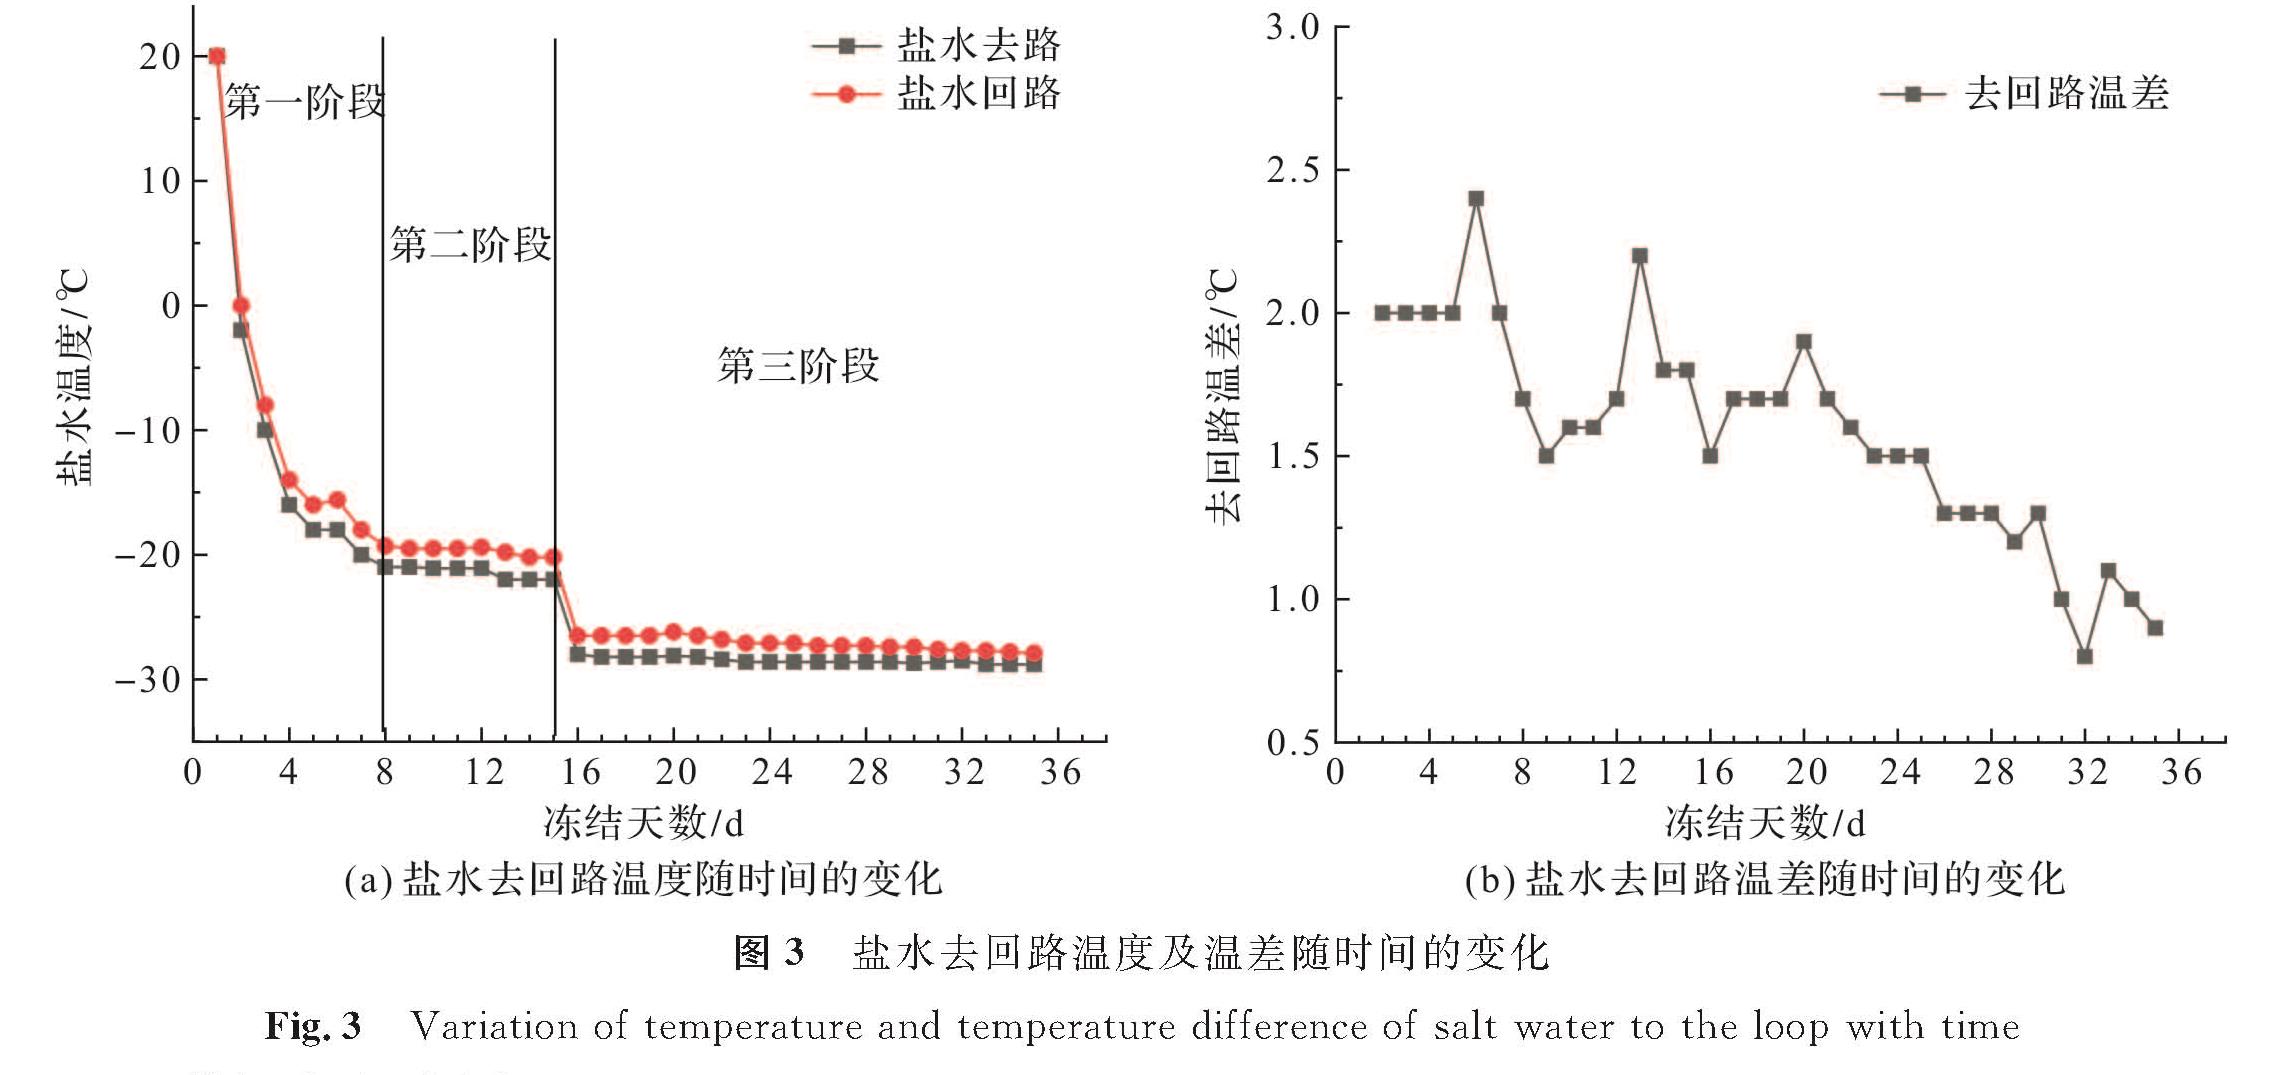 图3 盐水去回路温度及温差随时间的变化<br/>Fig.3 Variation of temperature and temperature difference of salt water to the loop with time